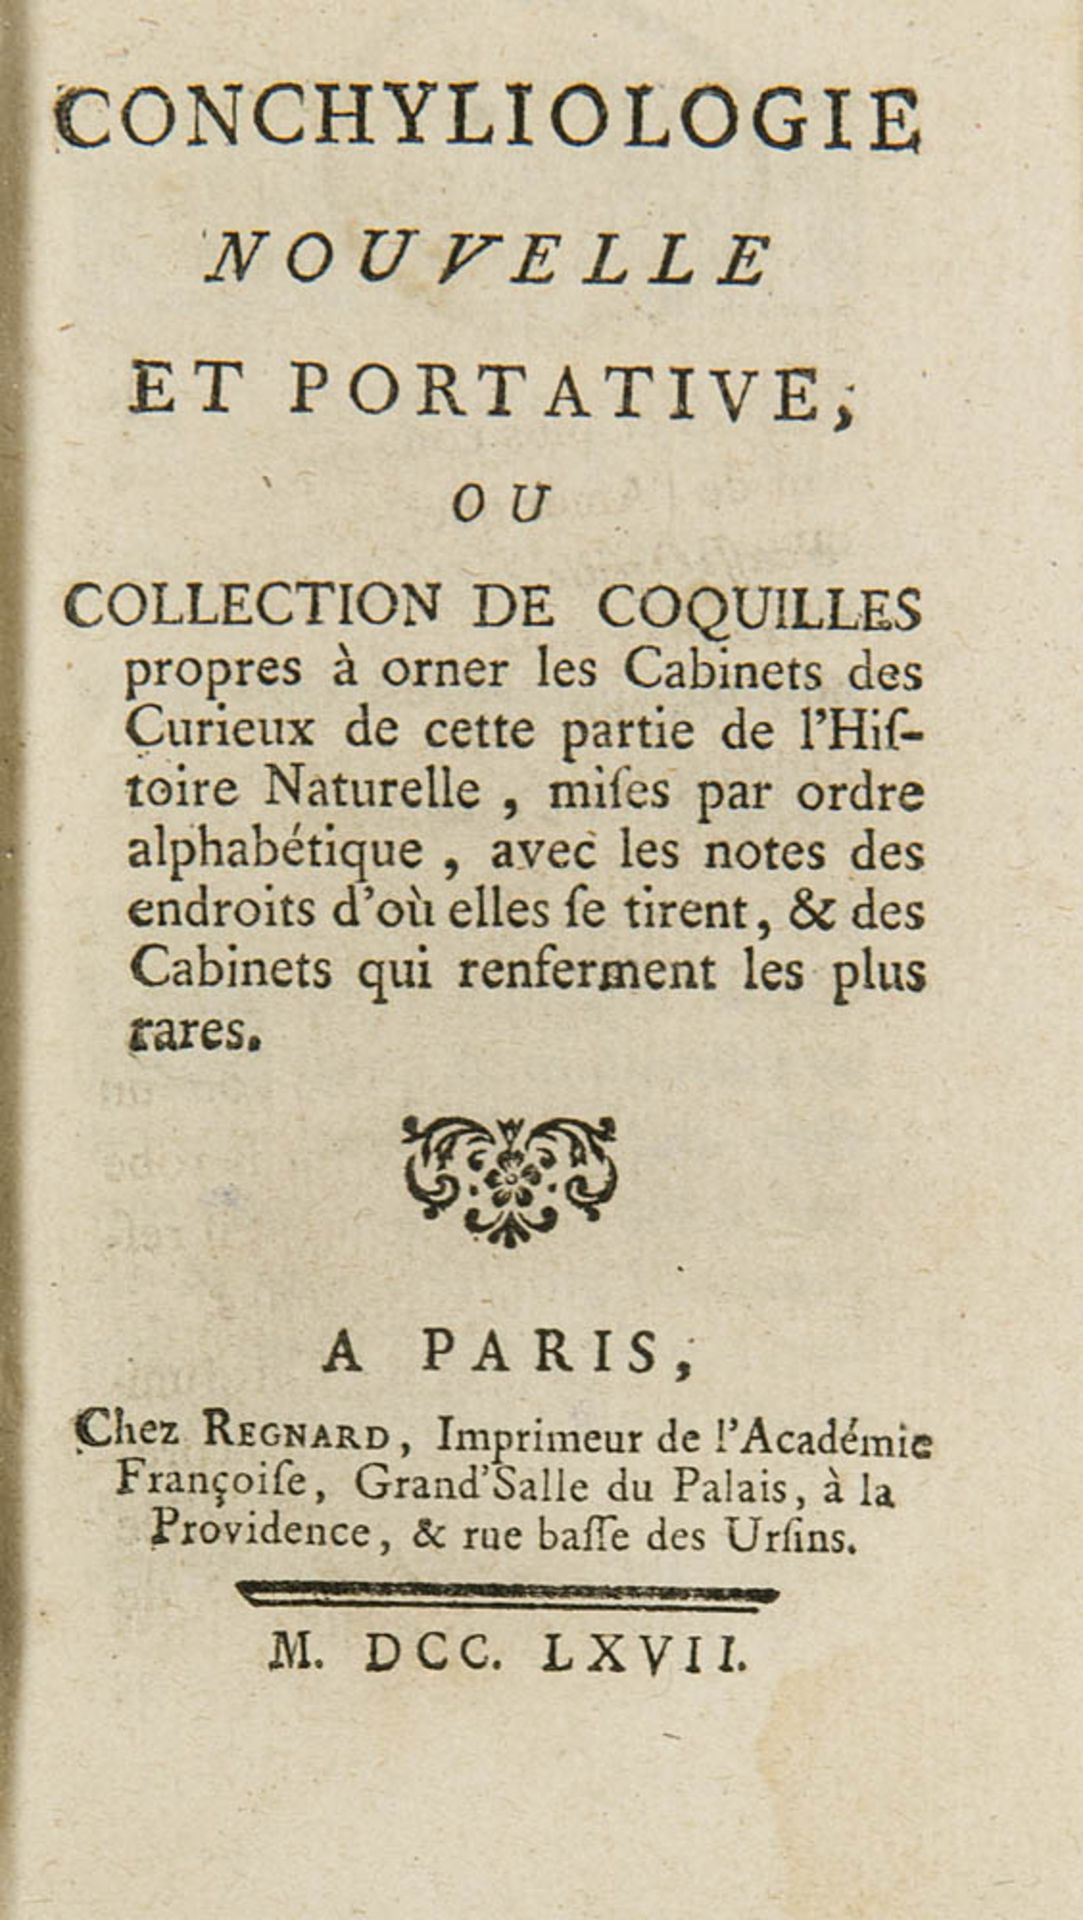 Conchylien - - Dezallier d'Argenville, A. J. Conchyliologie nouvelle et portative, ou collection